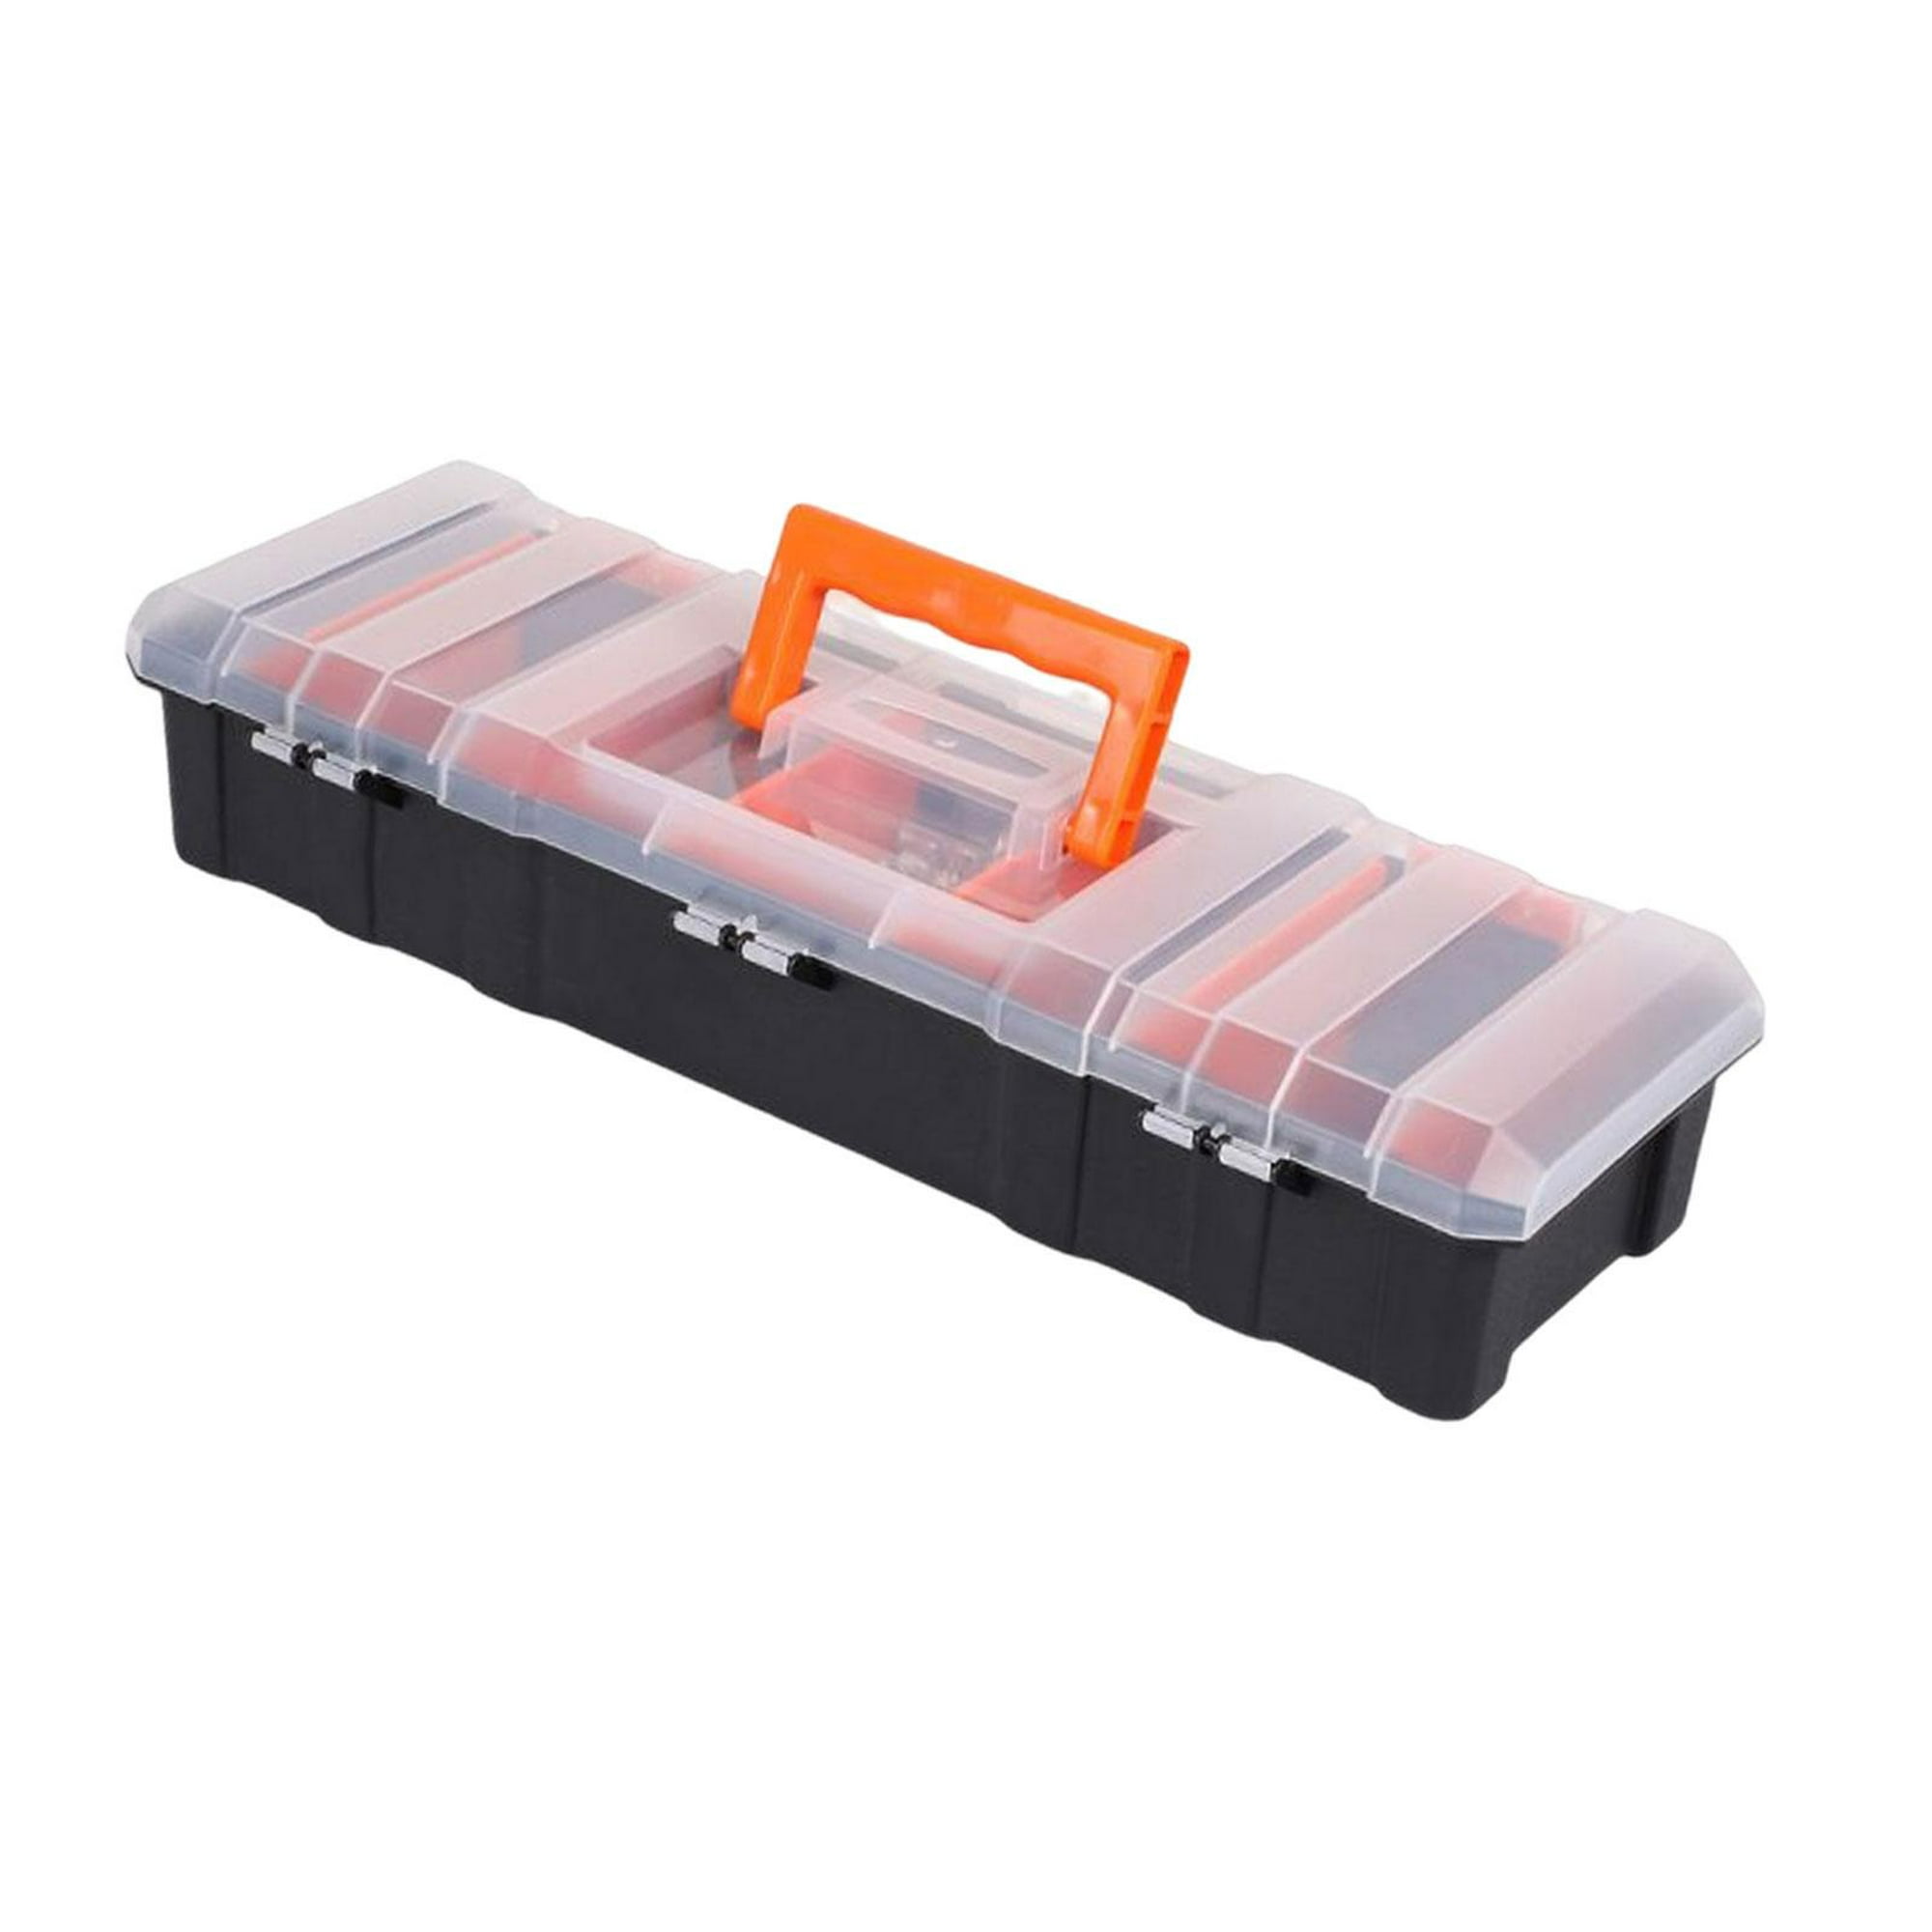 Caja organizadora multifunción para herramientas, caja protectora para  herramientas, sellada, compacta, a prueba de golpes, resistente al agua,  caja